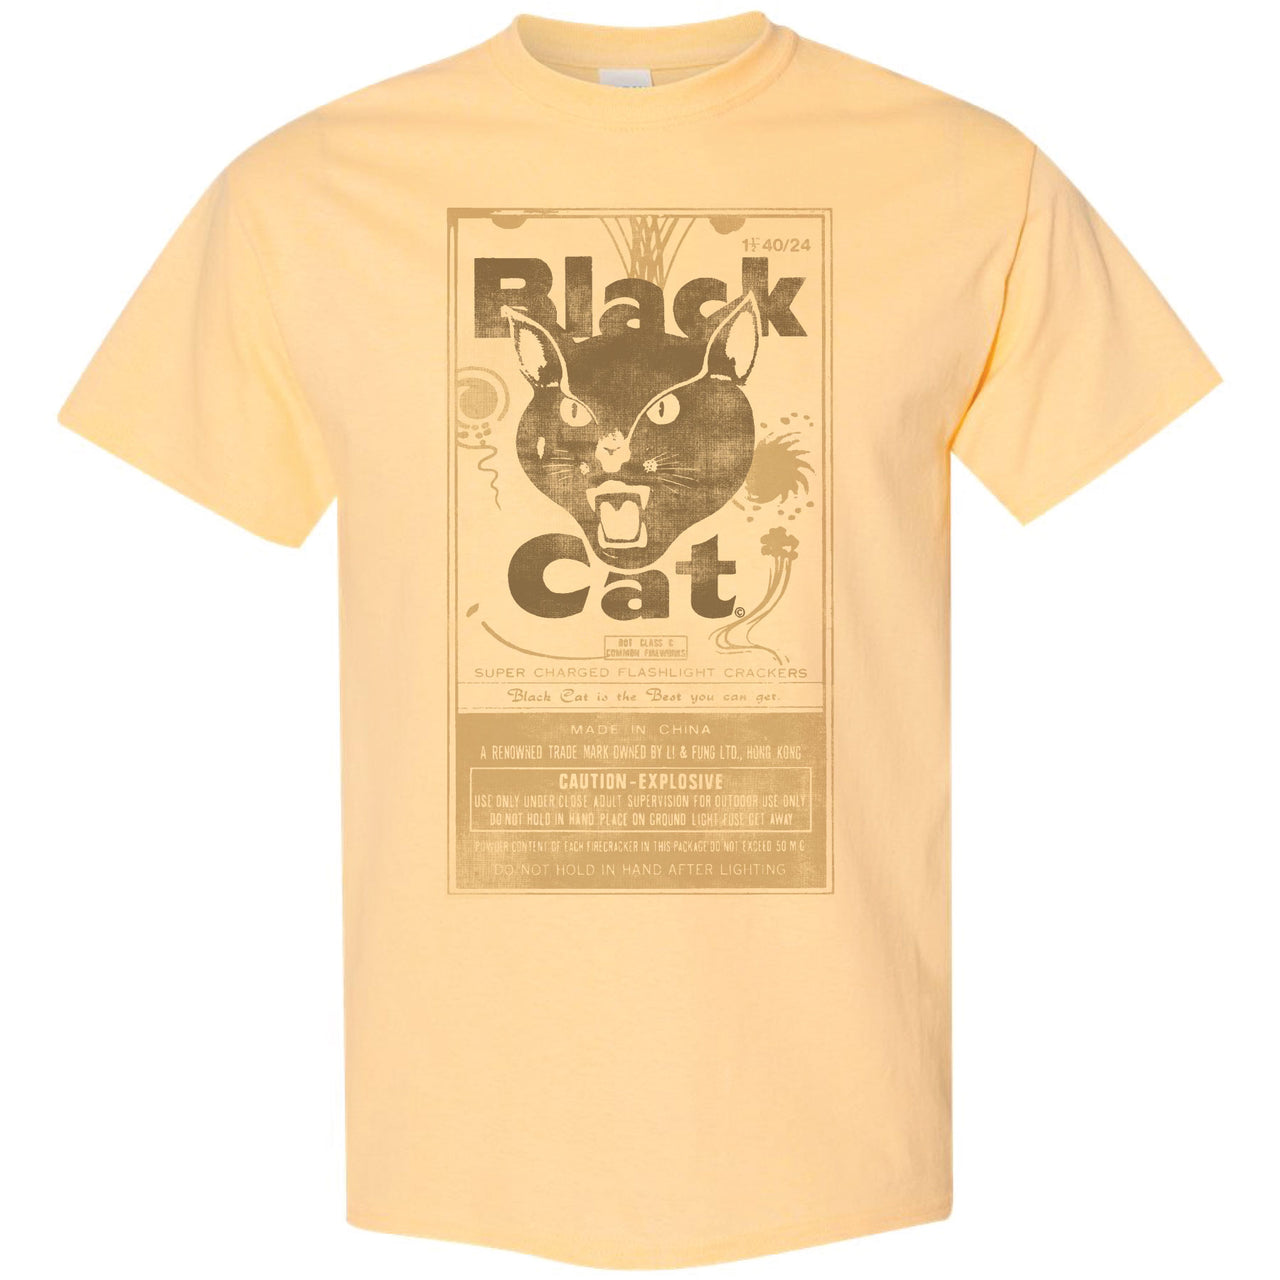 Black Cat - Firecracker T-shirt